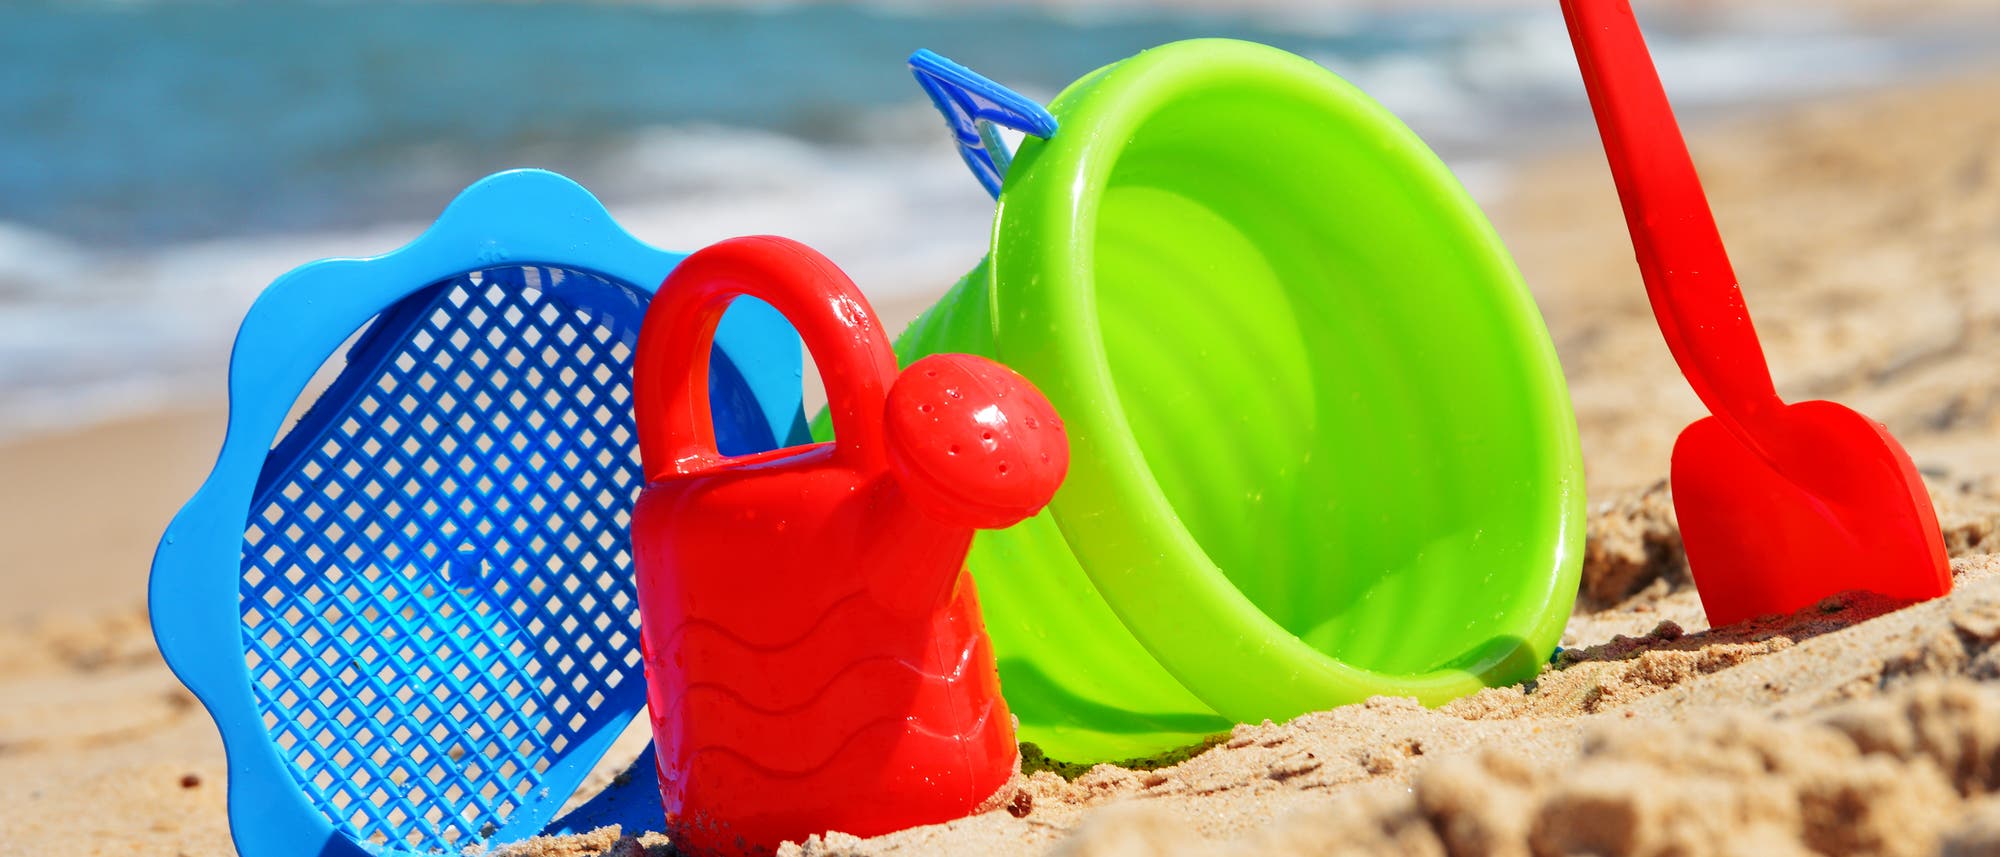 Sieb, Gießkanne, Eimer und Schaufel aus grellbuntem Plastik stehen im Sand an einem Strand